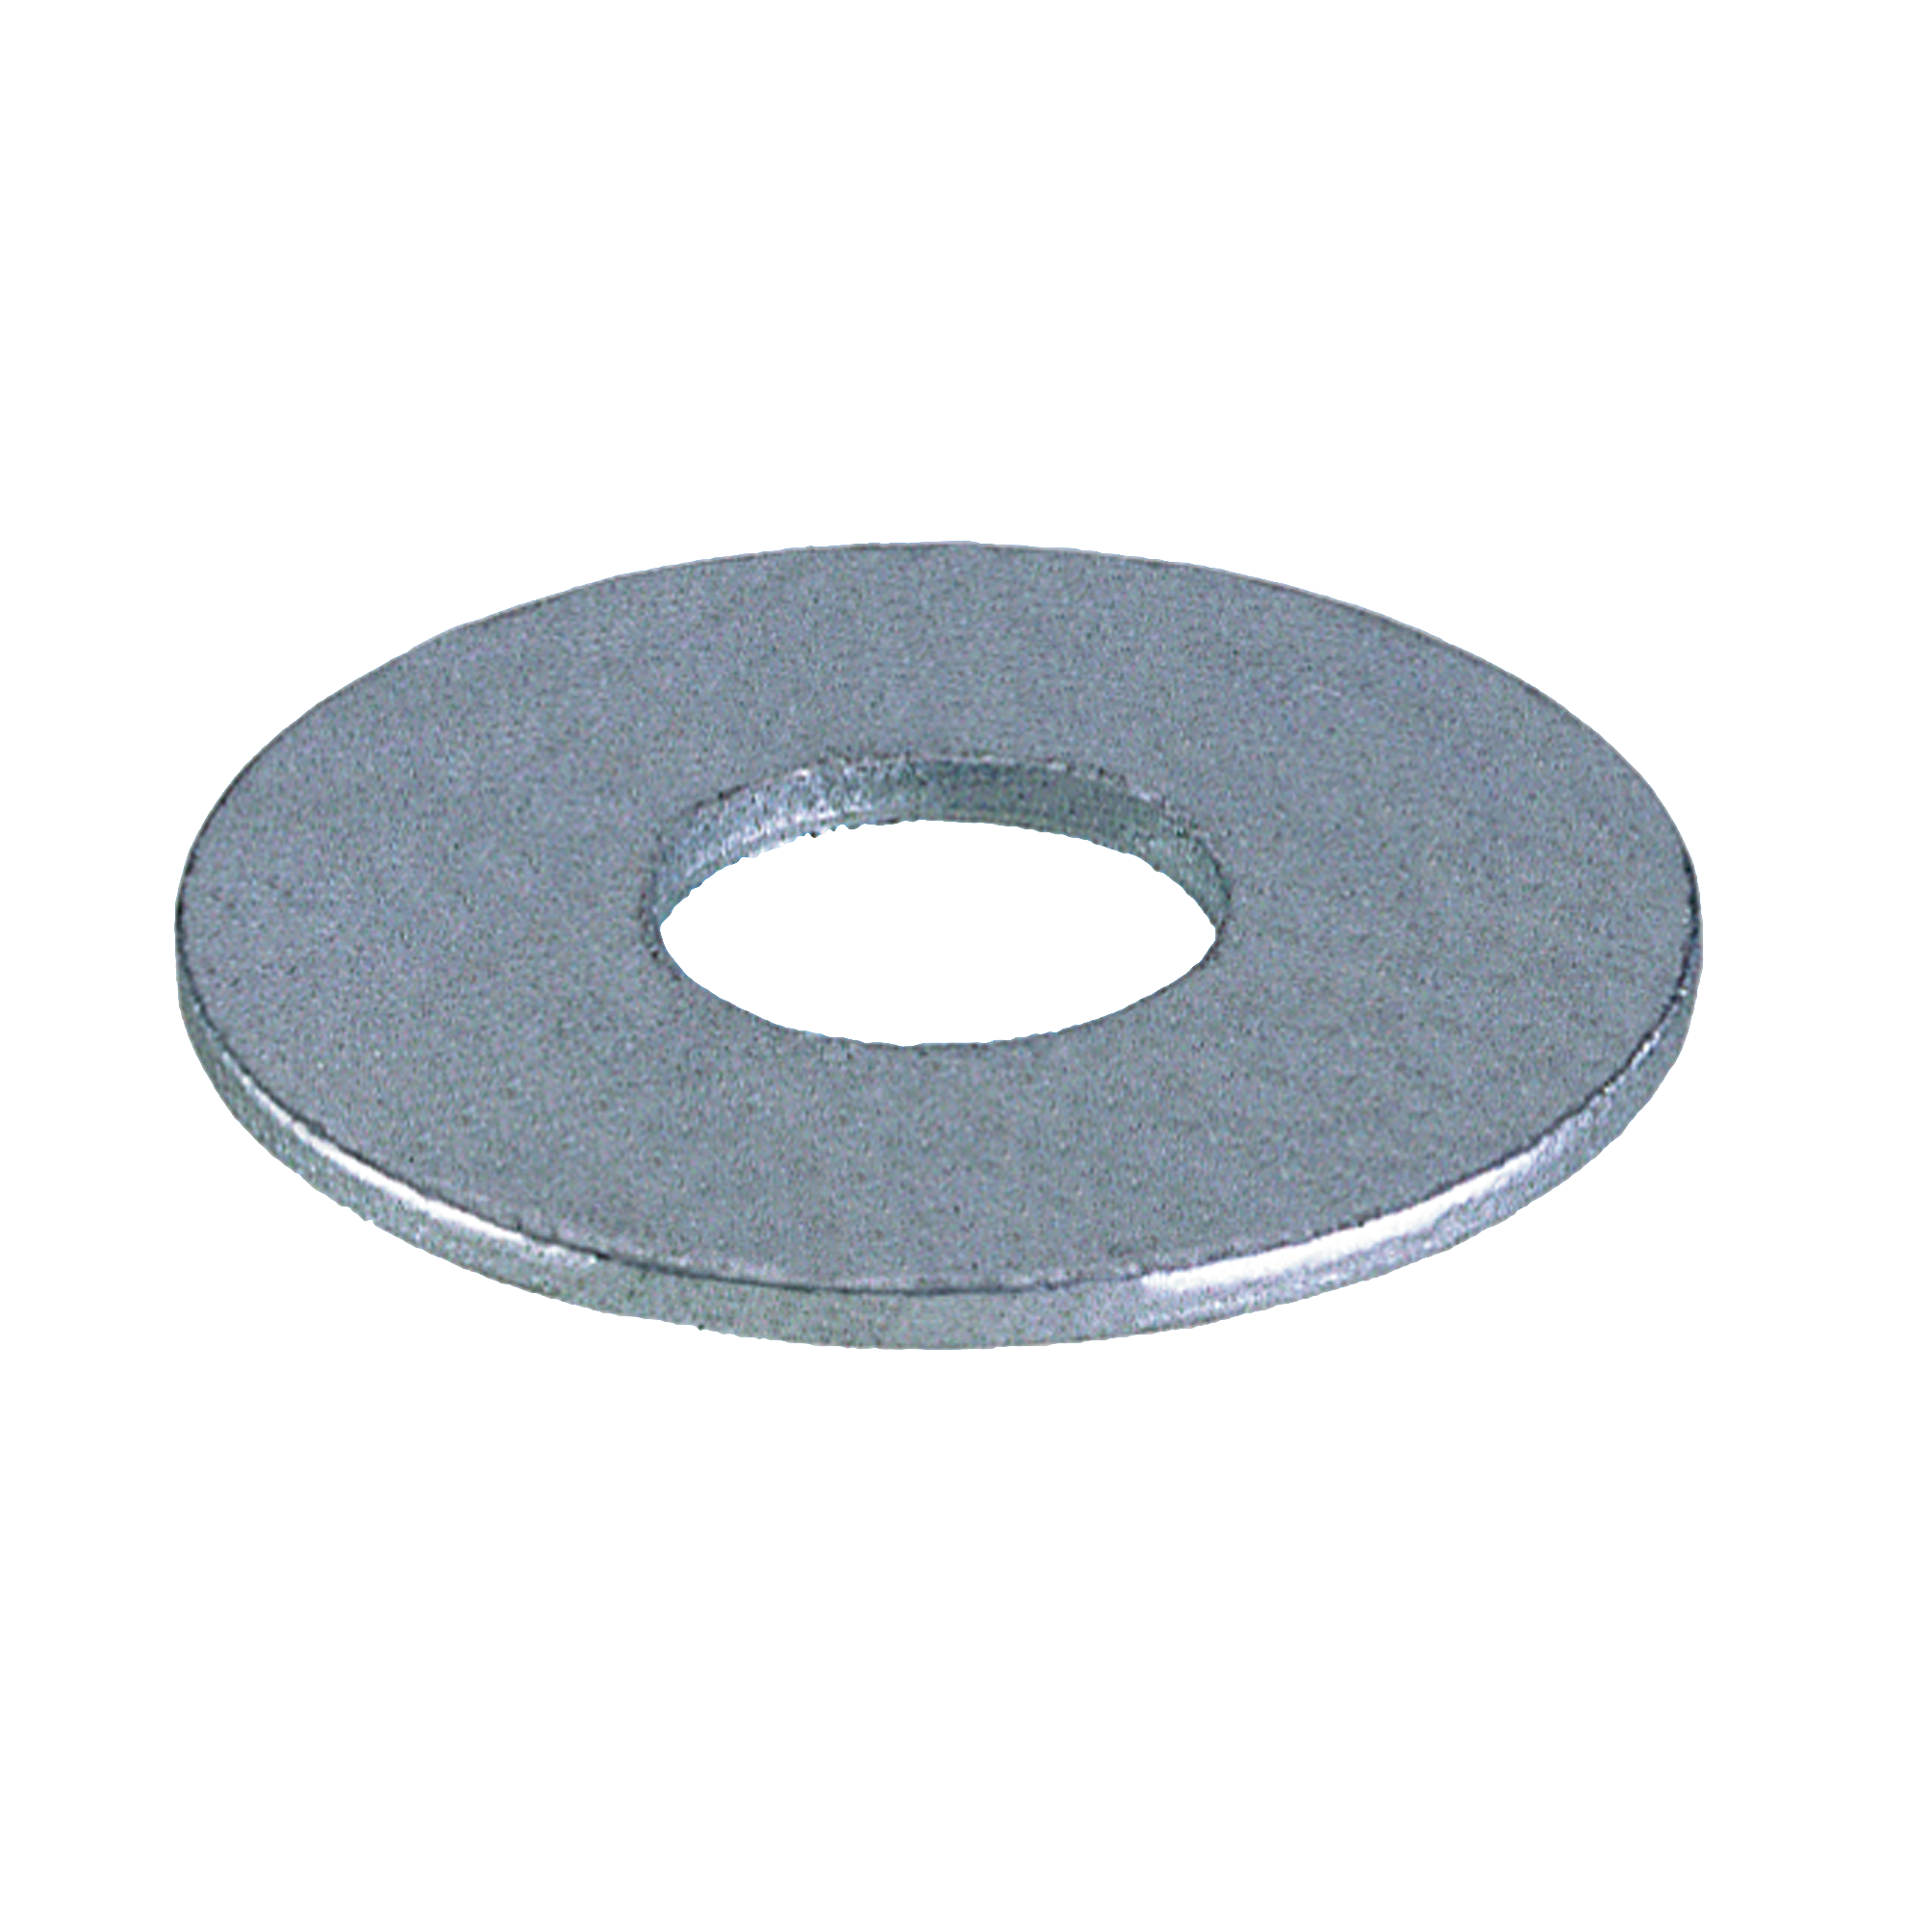 Tope plástico 40 mm. con tornillo y arandela — Metalúrgica Arandes